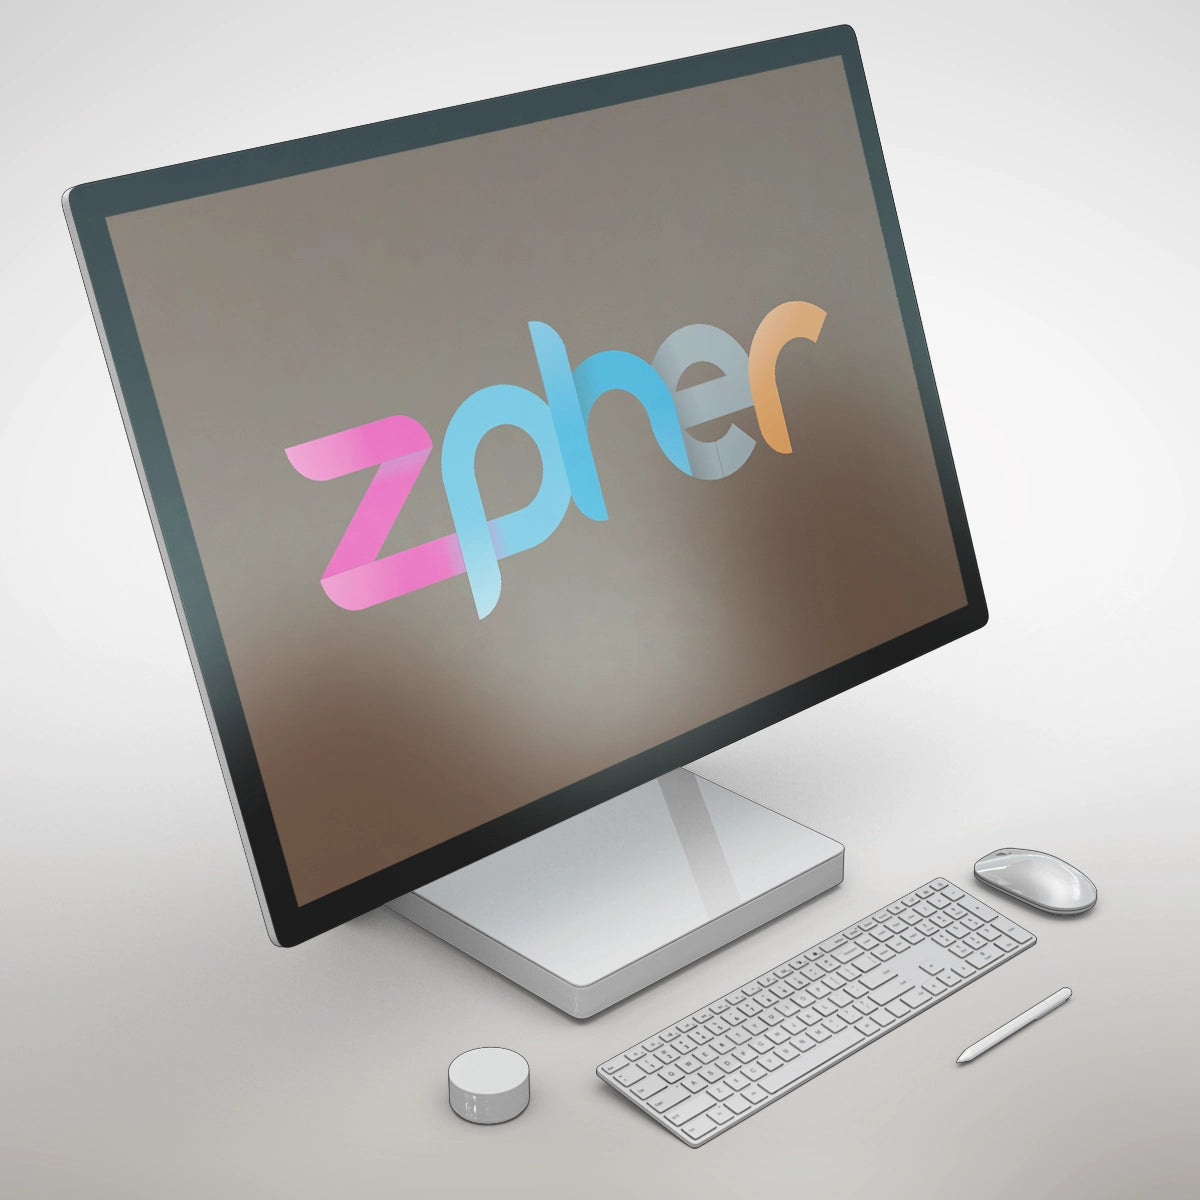 Zpher.com